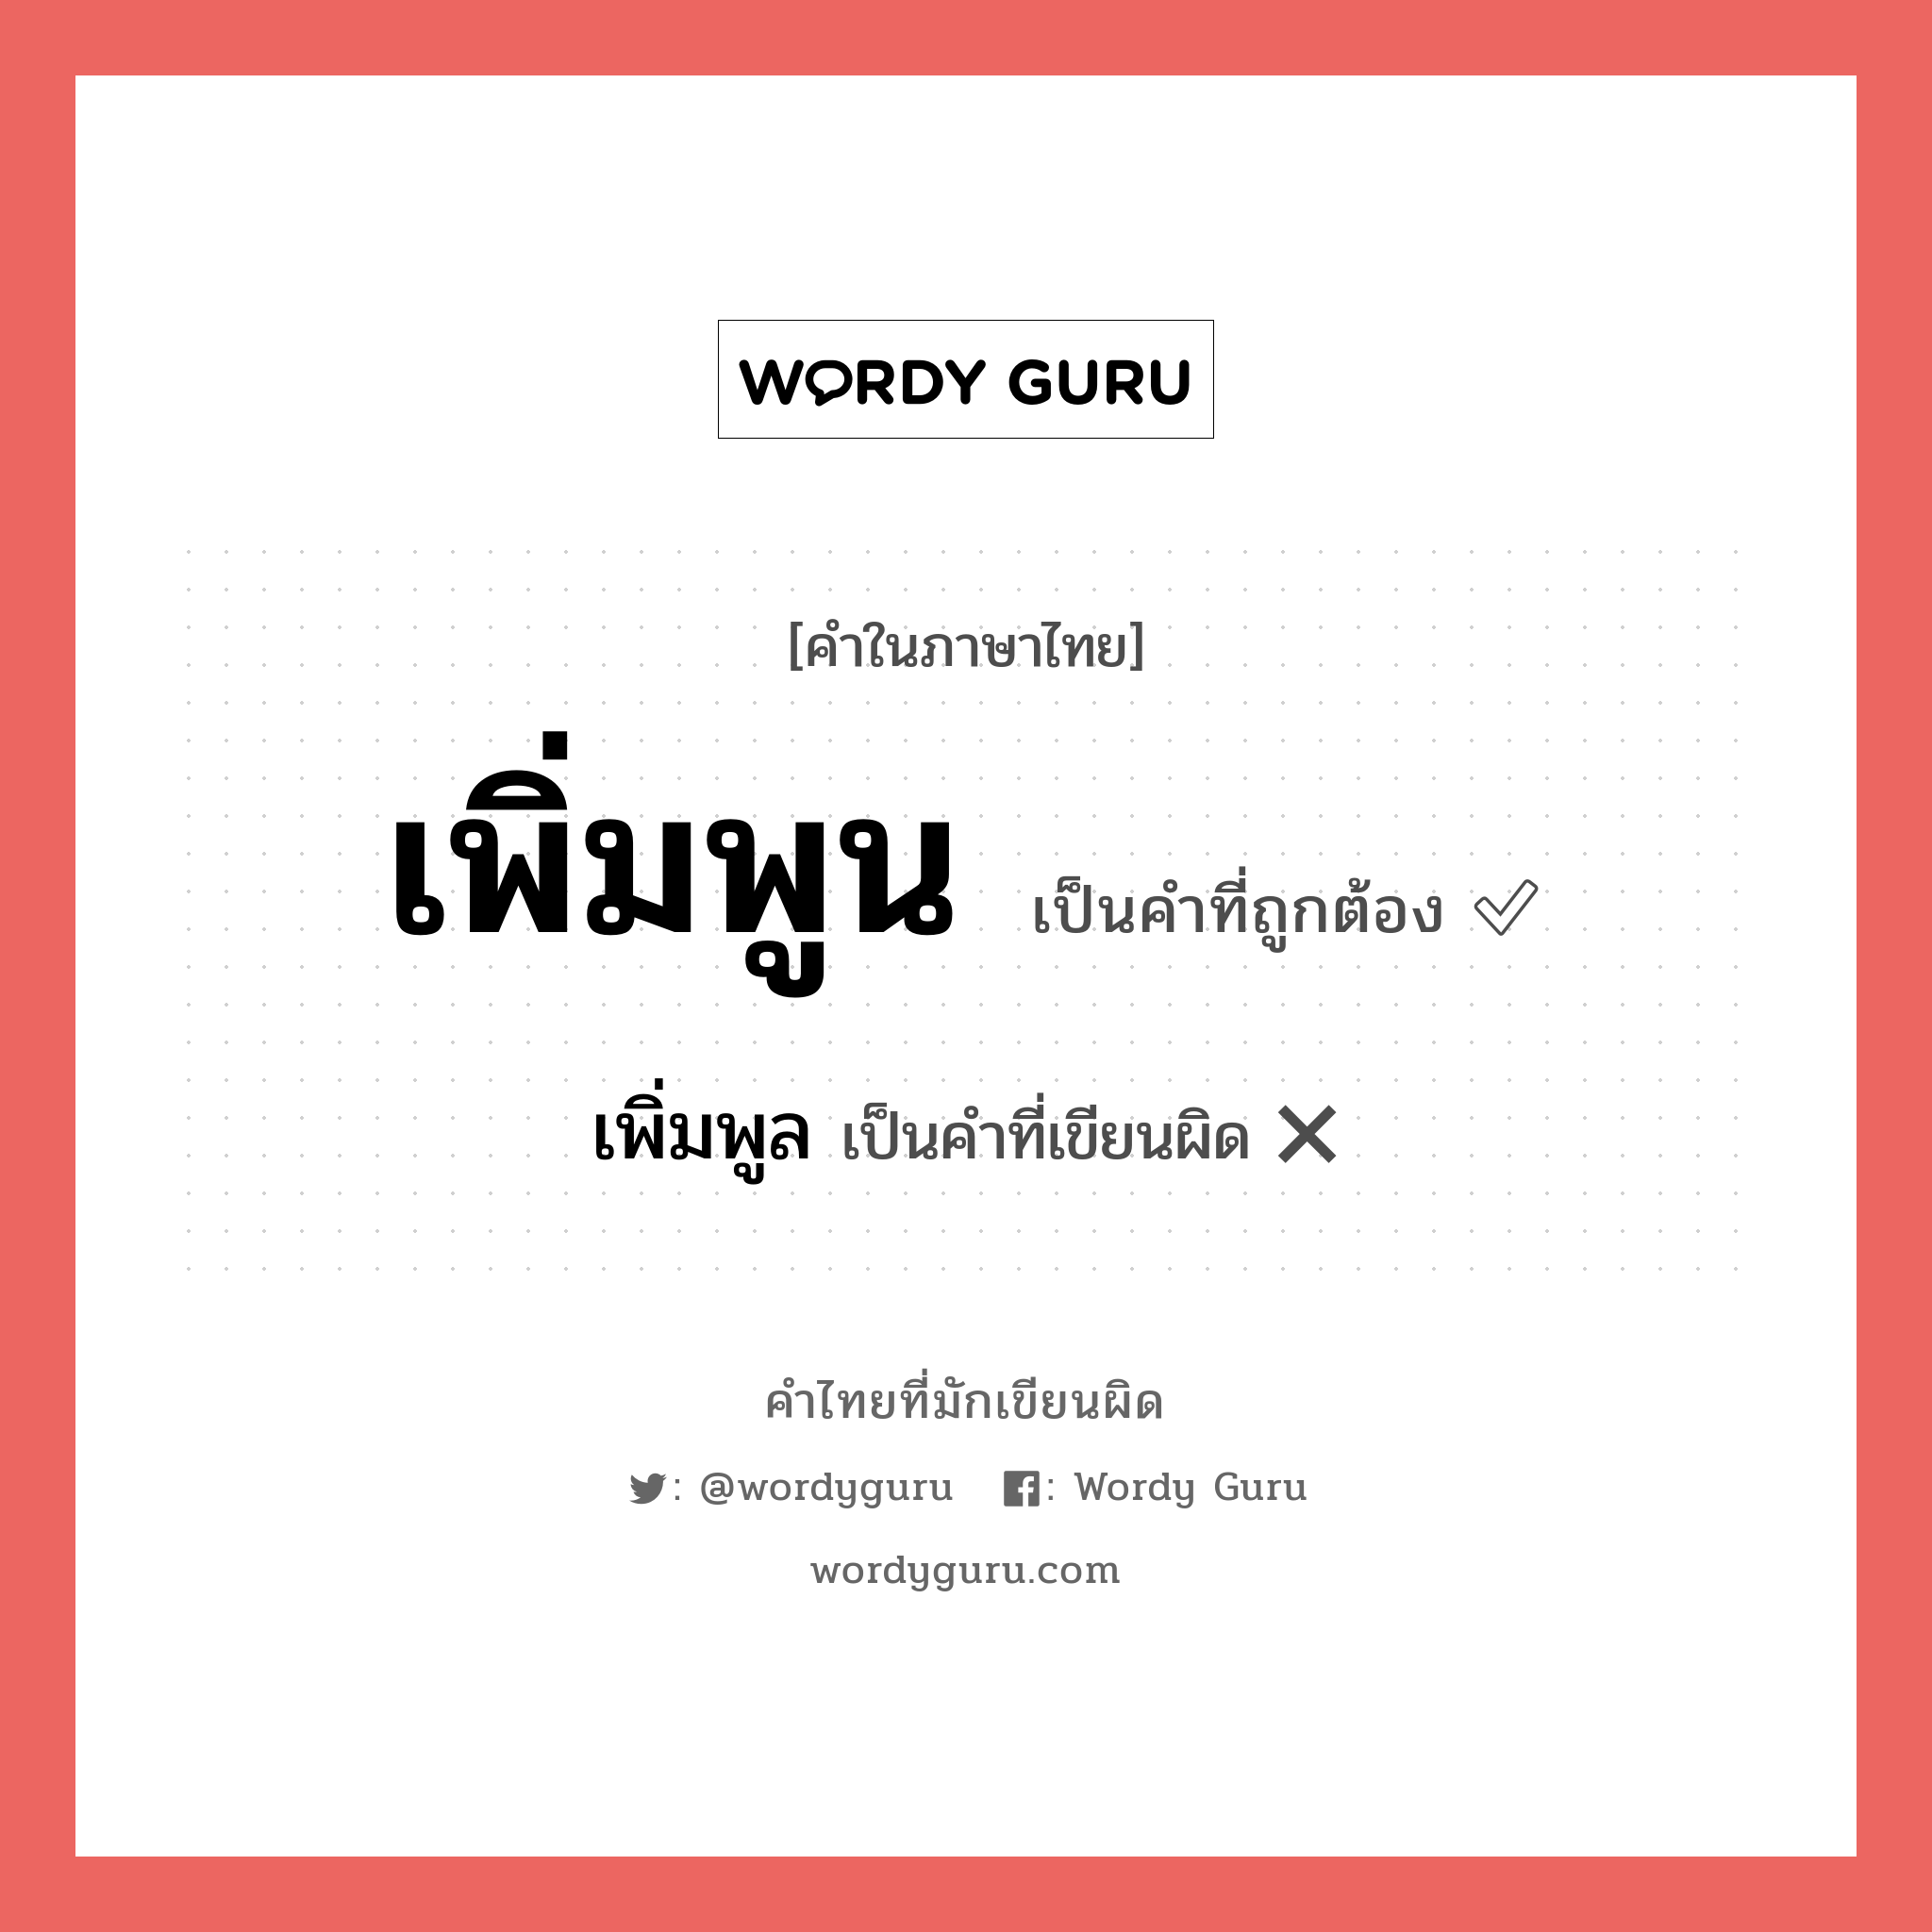 เพิ่มพูล หรือ เพิ่มพูน คำไหนเขียนถูก?, คำในภาษาไทยที่มักเขียนผิด เพิ่มพูล คำที่ผิด ❌ เพิ่มพูน